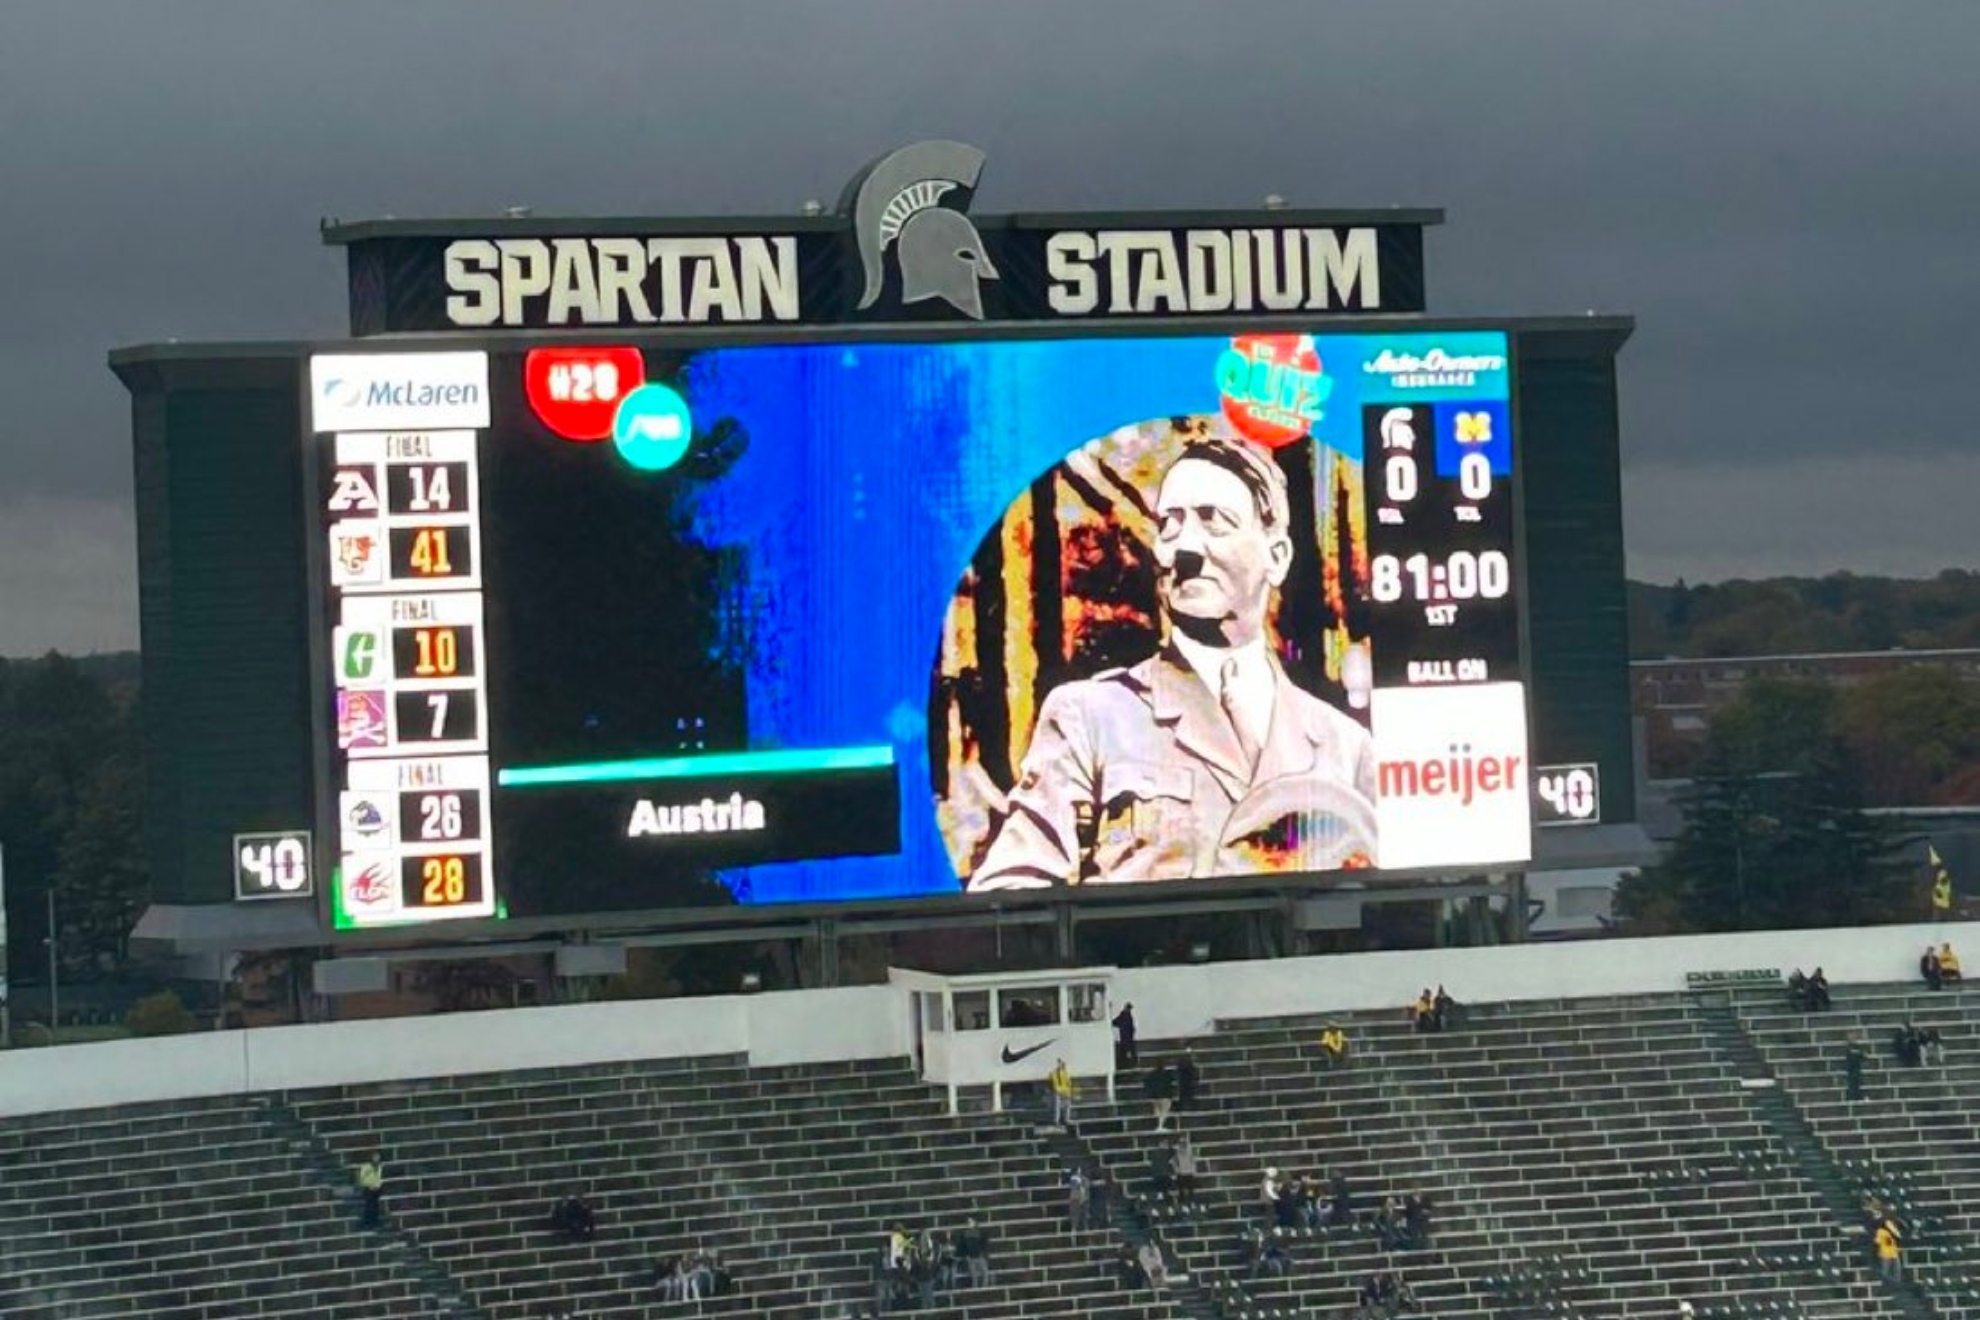 La Universidad de Michigan se disculpa por mostrar una foto de Hitler antes de un partido